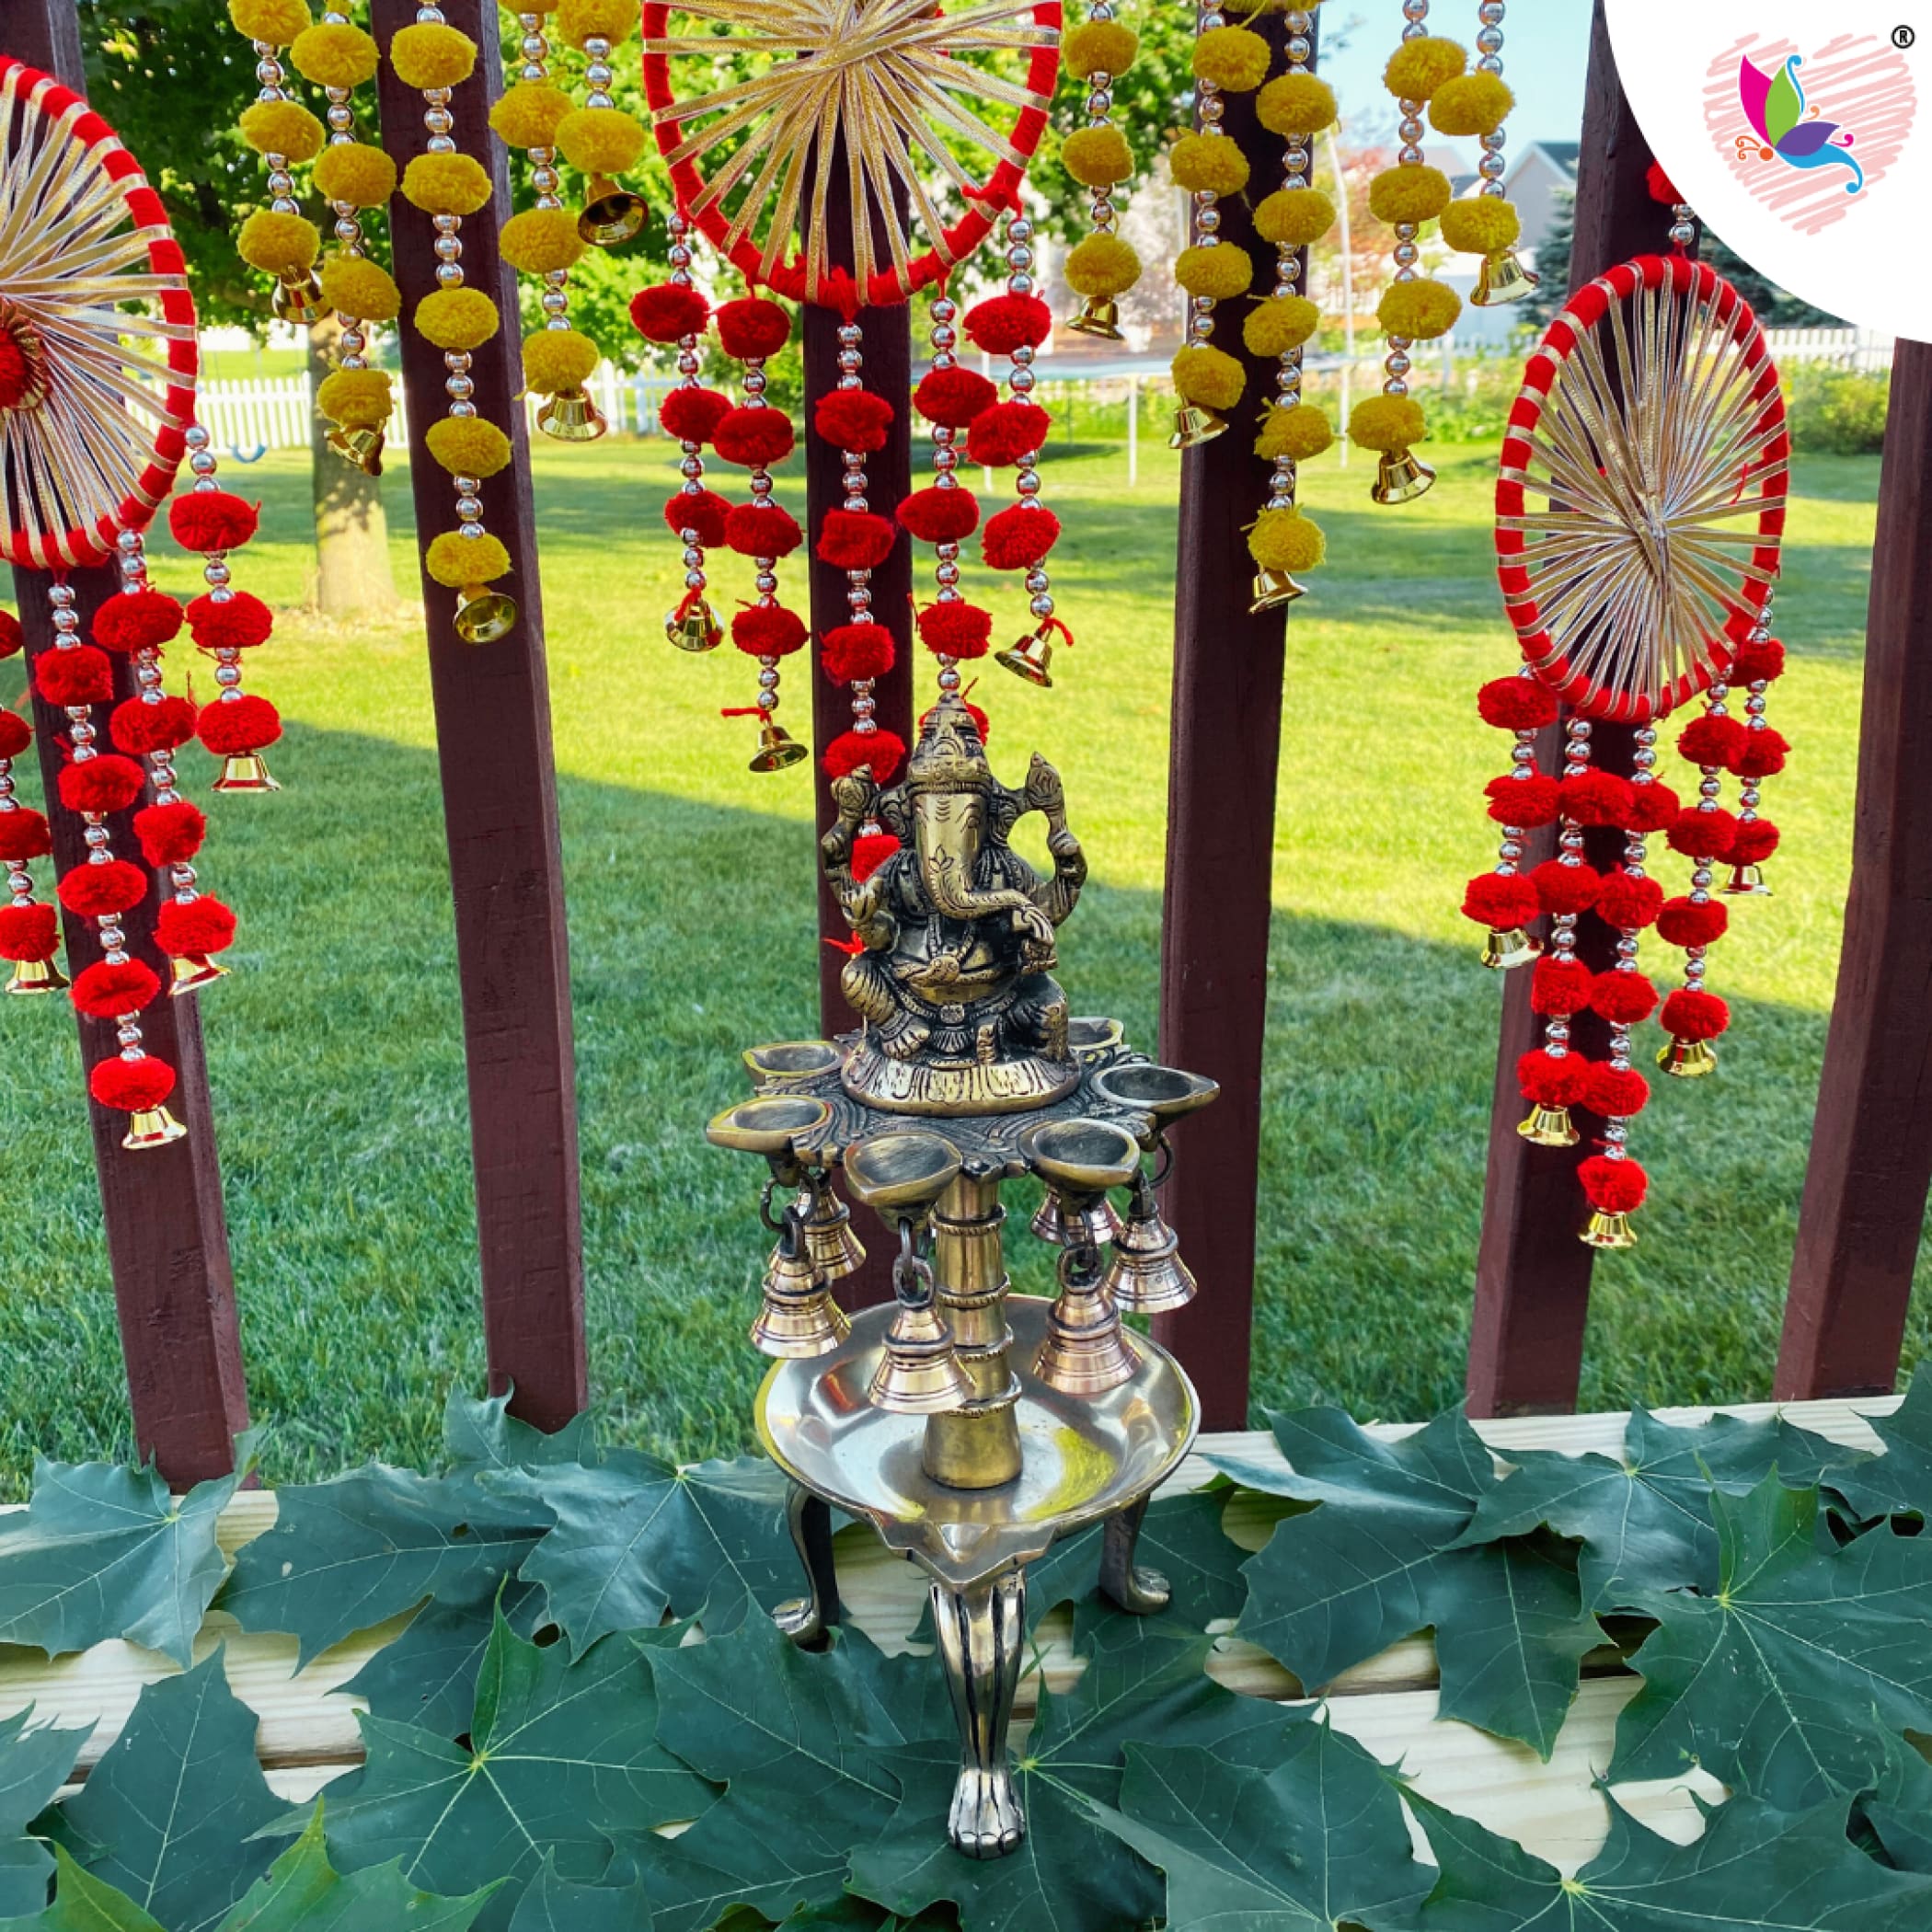 Ganesh brass oil tall diya for home decor samai diwali lamp